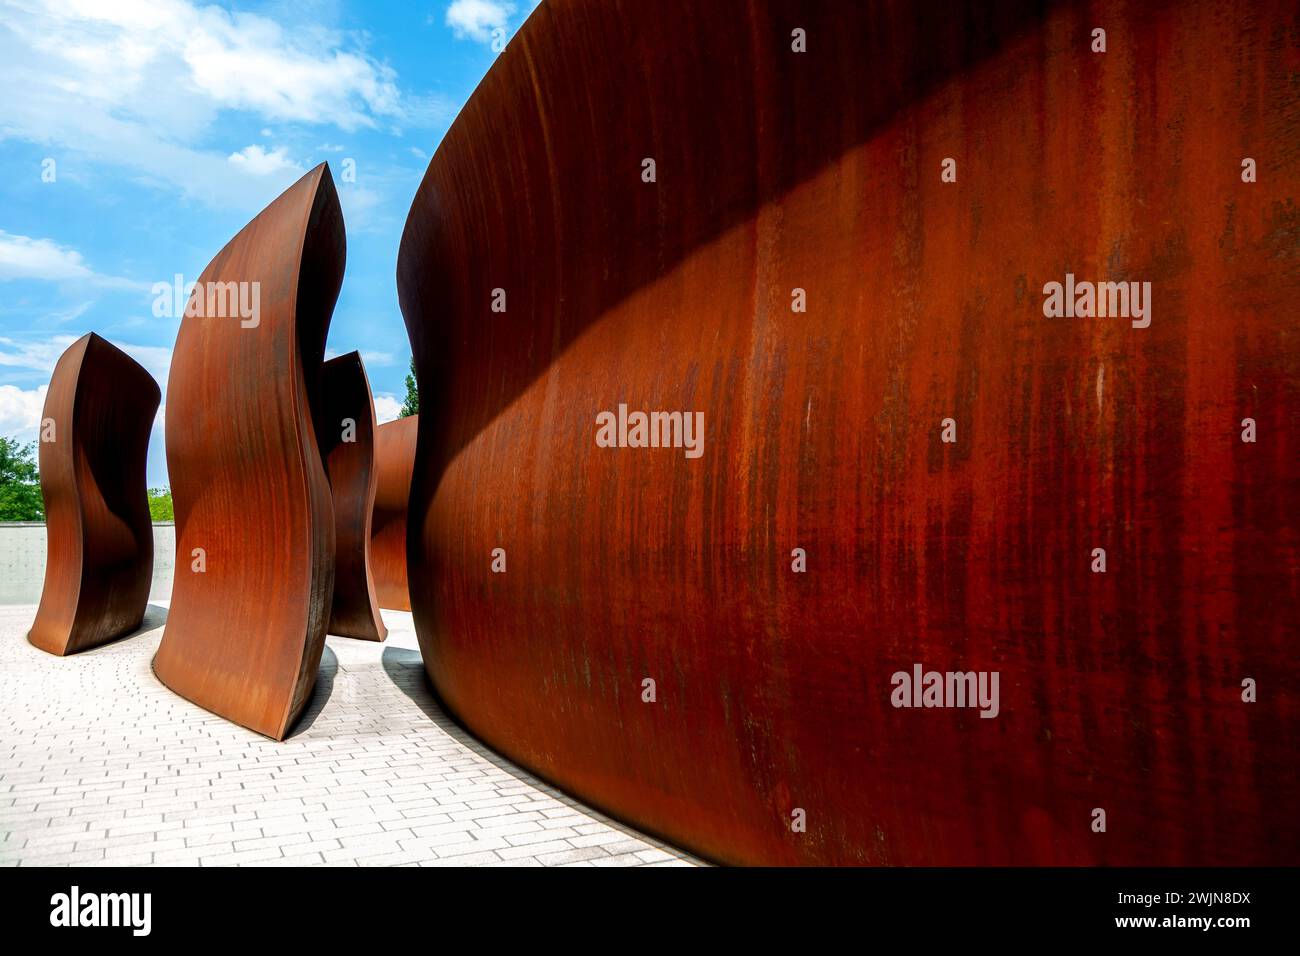 Sculpture géante Dirk’s Pod de Richard Serra a dédié cette sculpture au photographe Dirk Reinartz, Novartis-Campus, Bâle, Suisse. Dirk’s Pod SC Banque D'Images